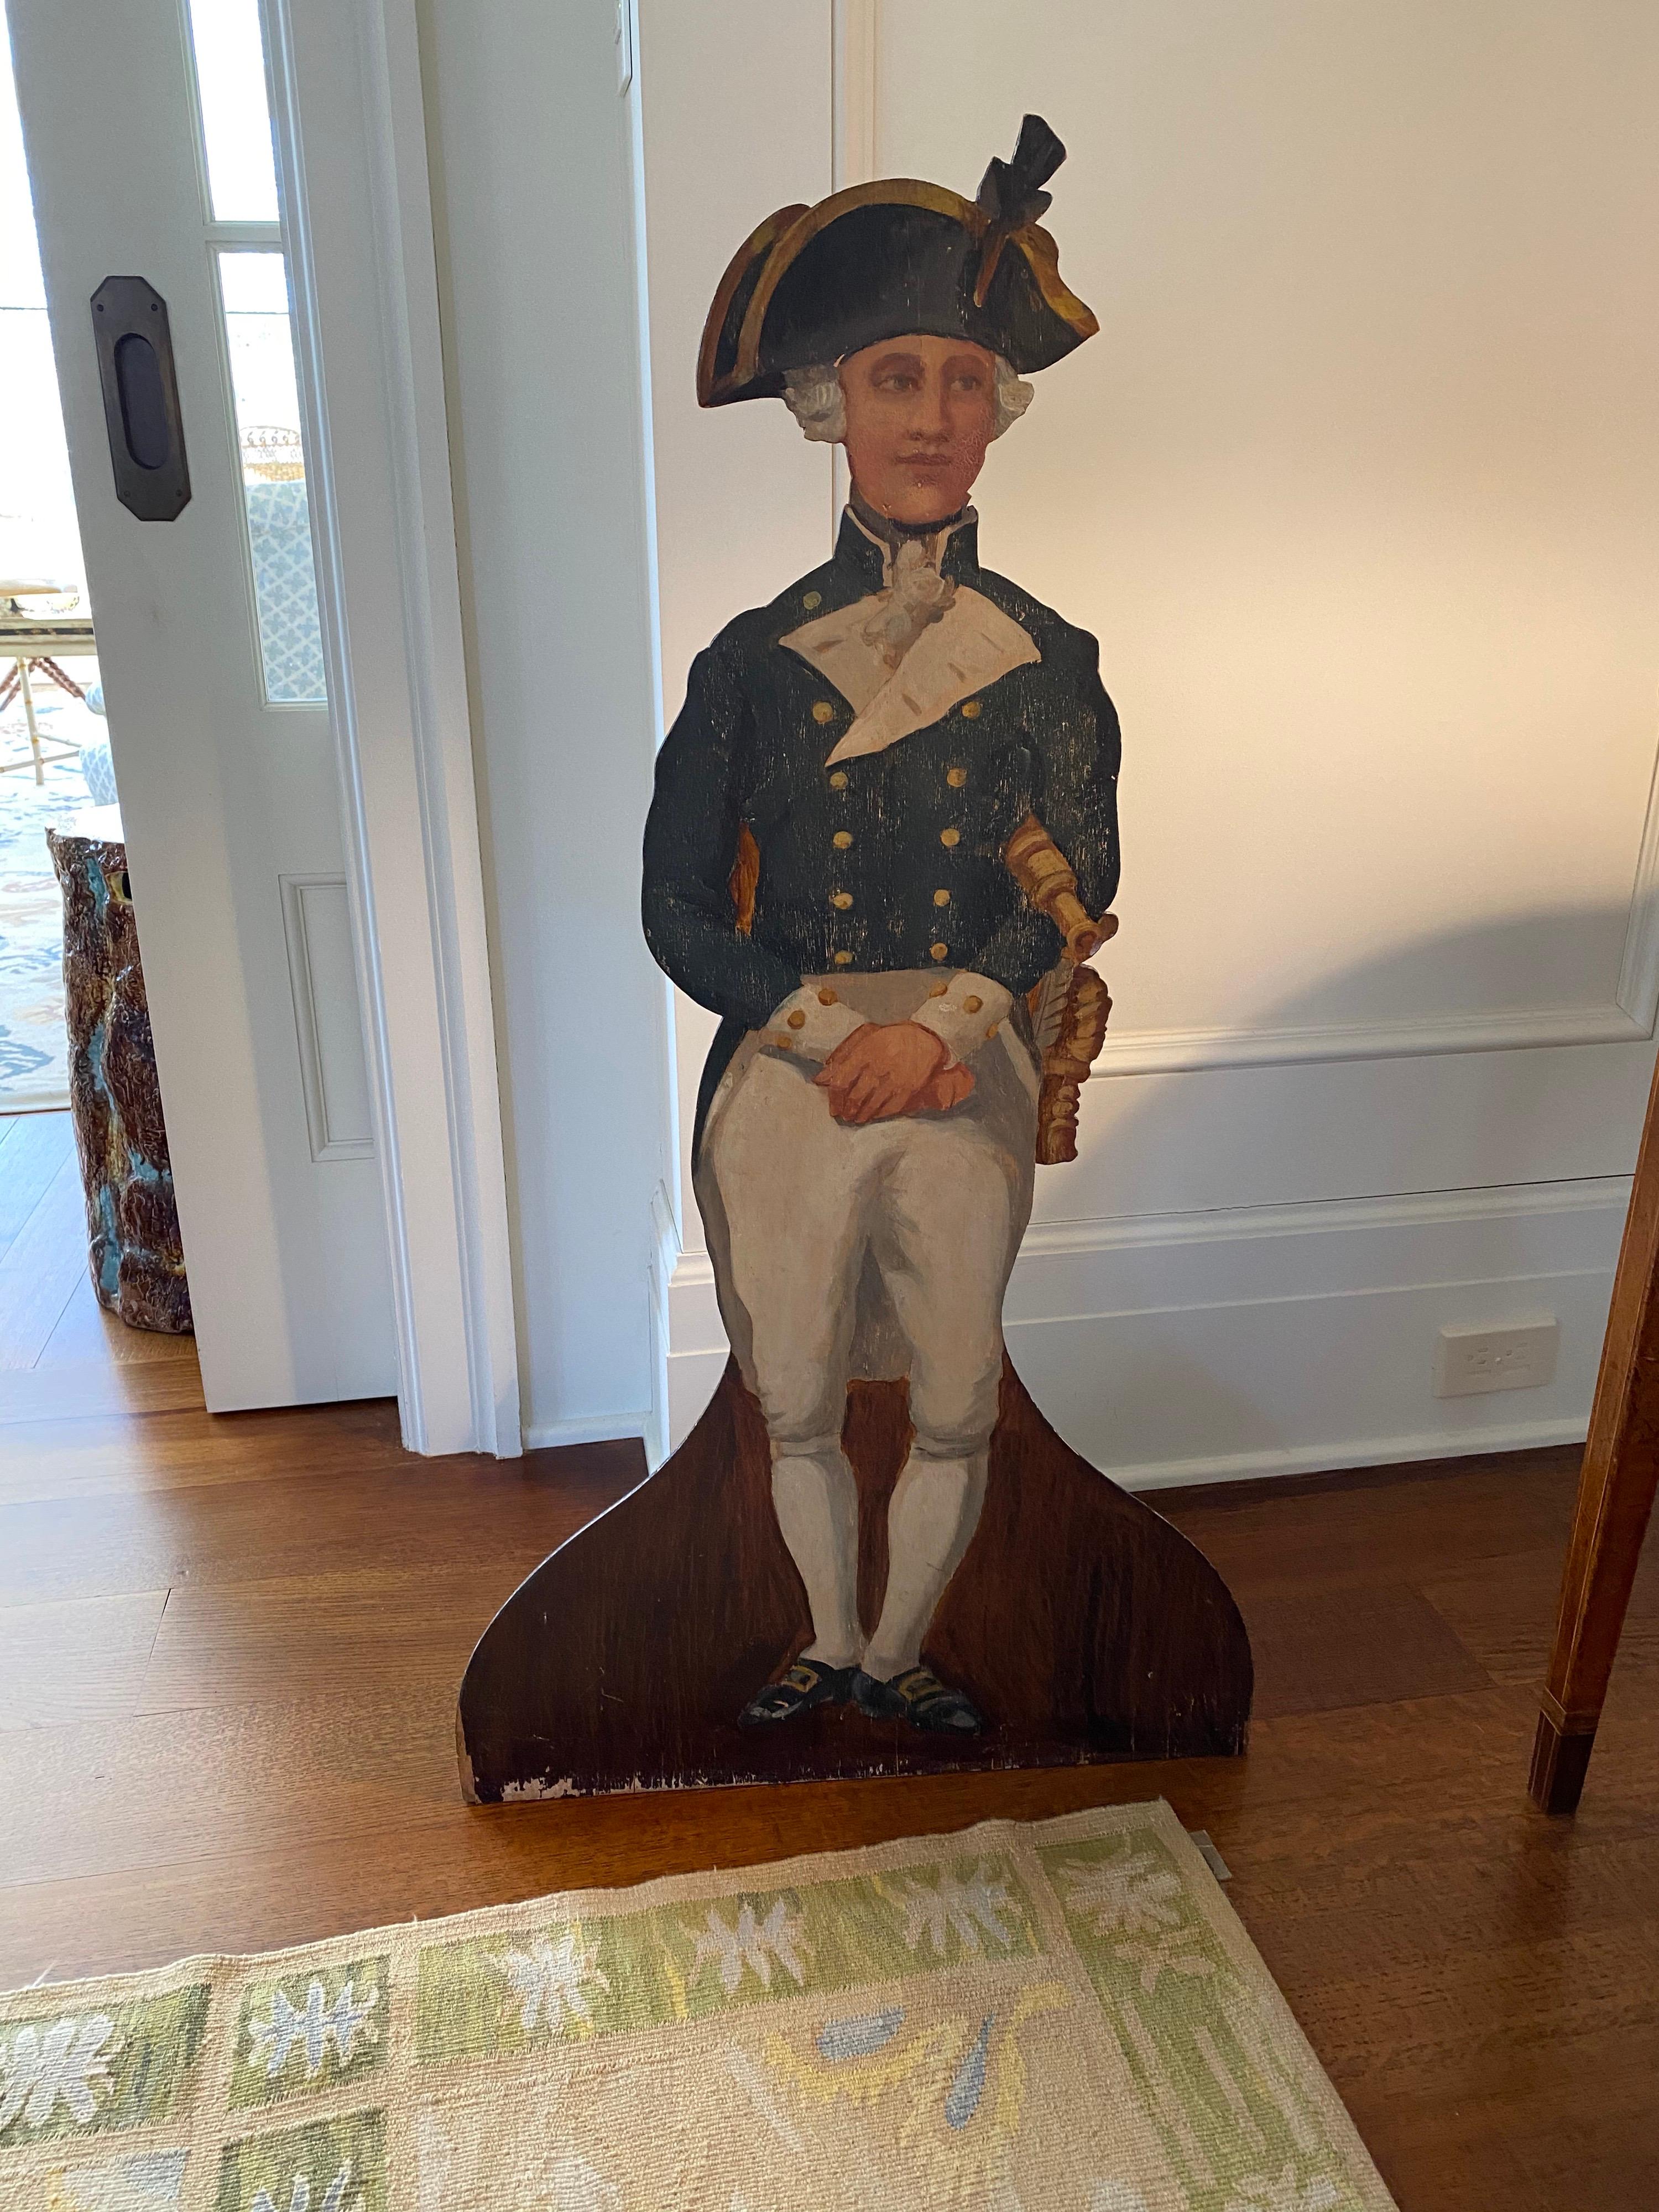 Planche de mannequin en bois peint anglais représentant un lieutenant de la marine royale.
Inscrit 